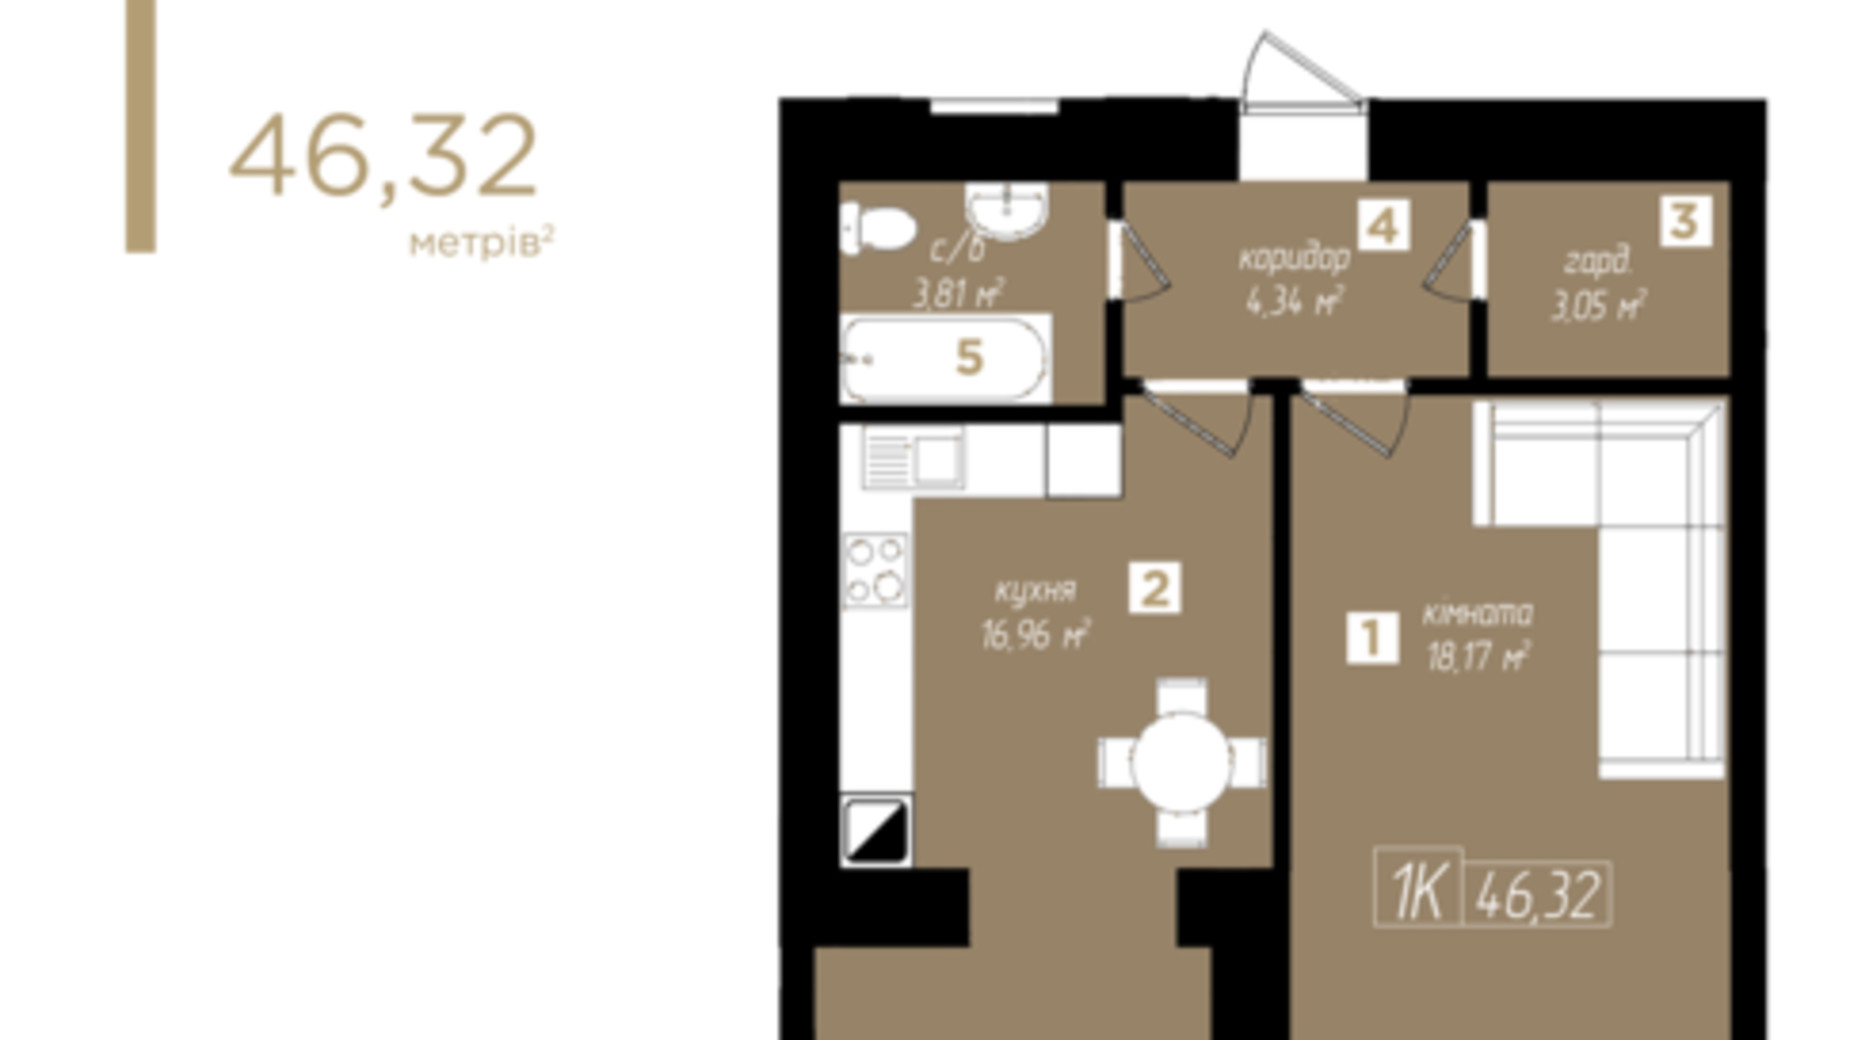 Планировка 1-комнатной квартиры в ЖК Молодежный 46.32 м², фото 524465